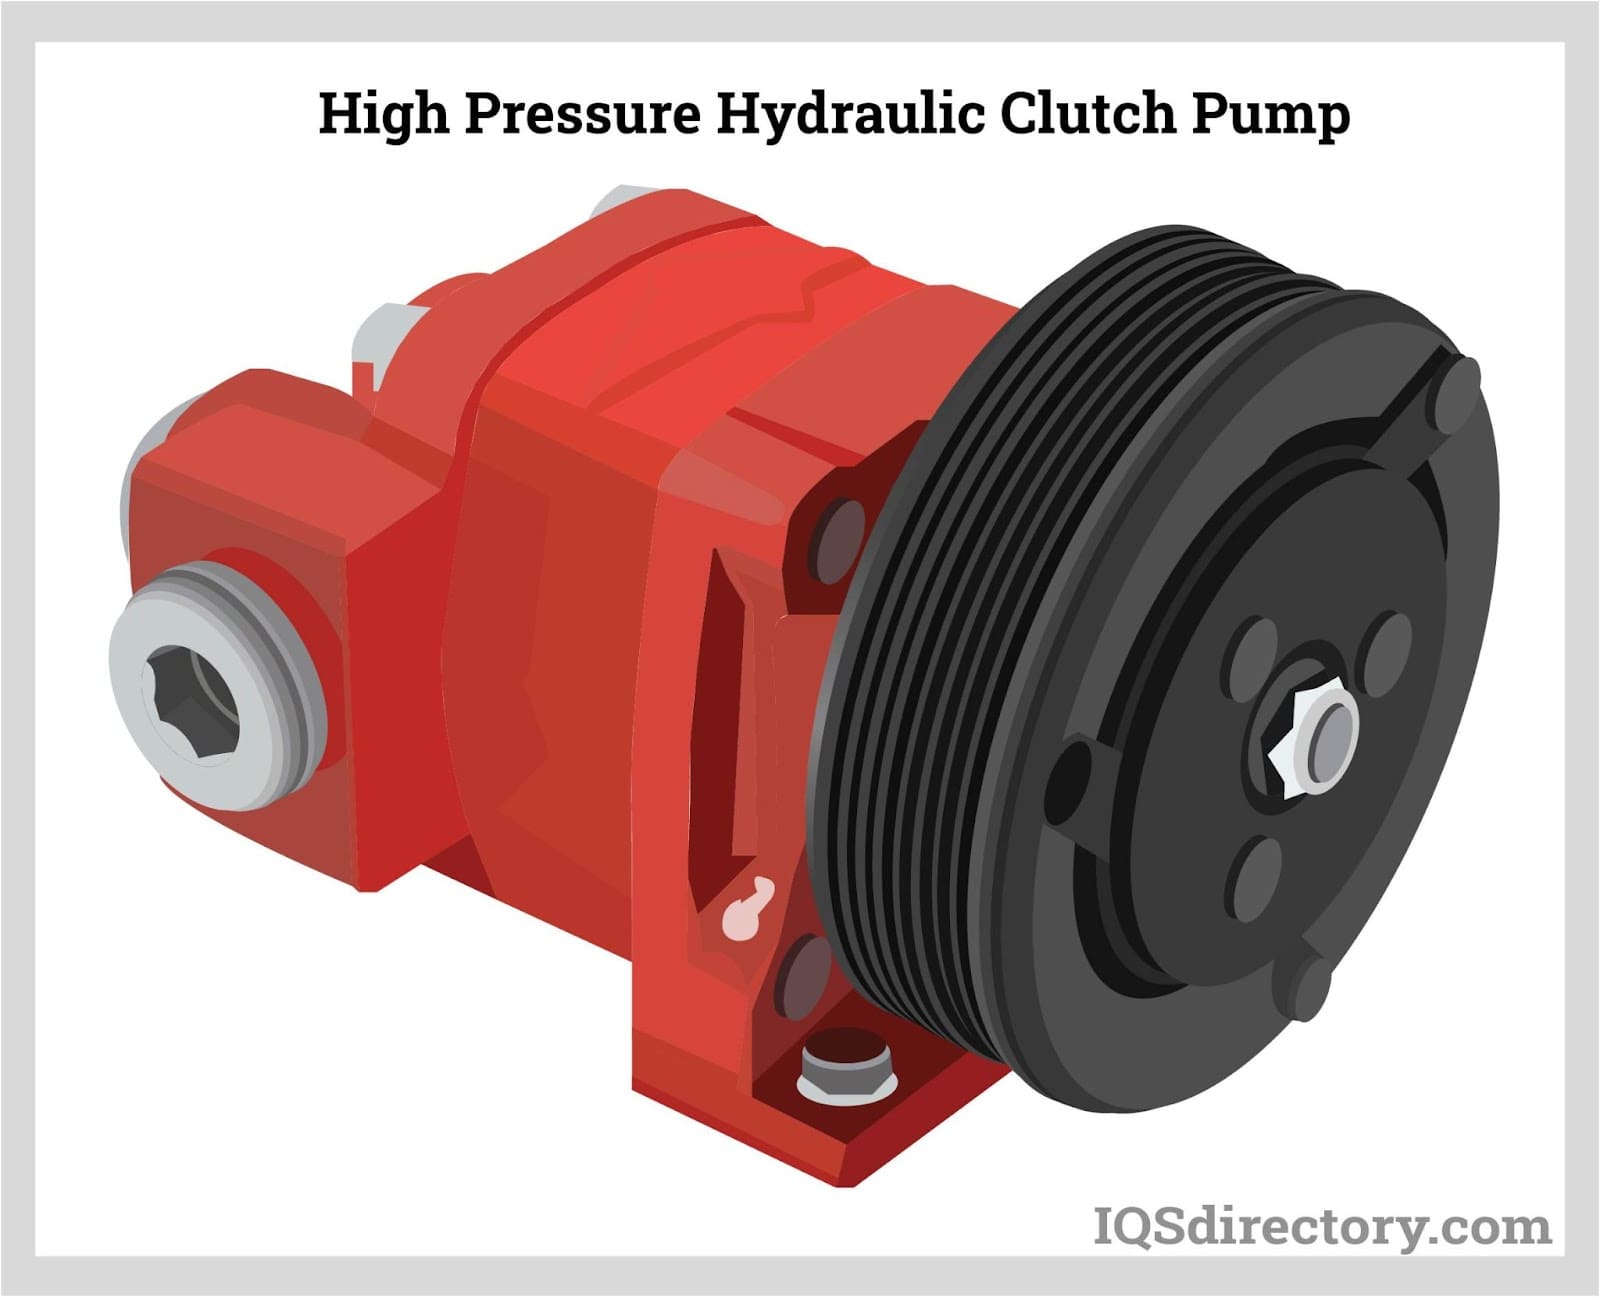 High Pressure Hydraulic Clutch Pump